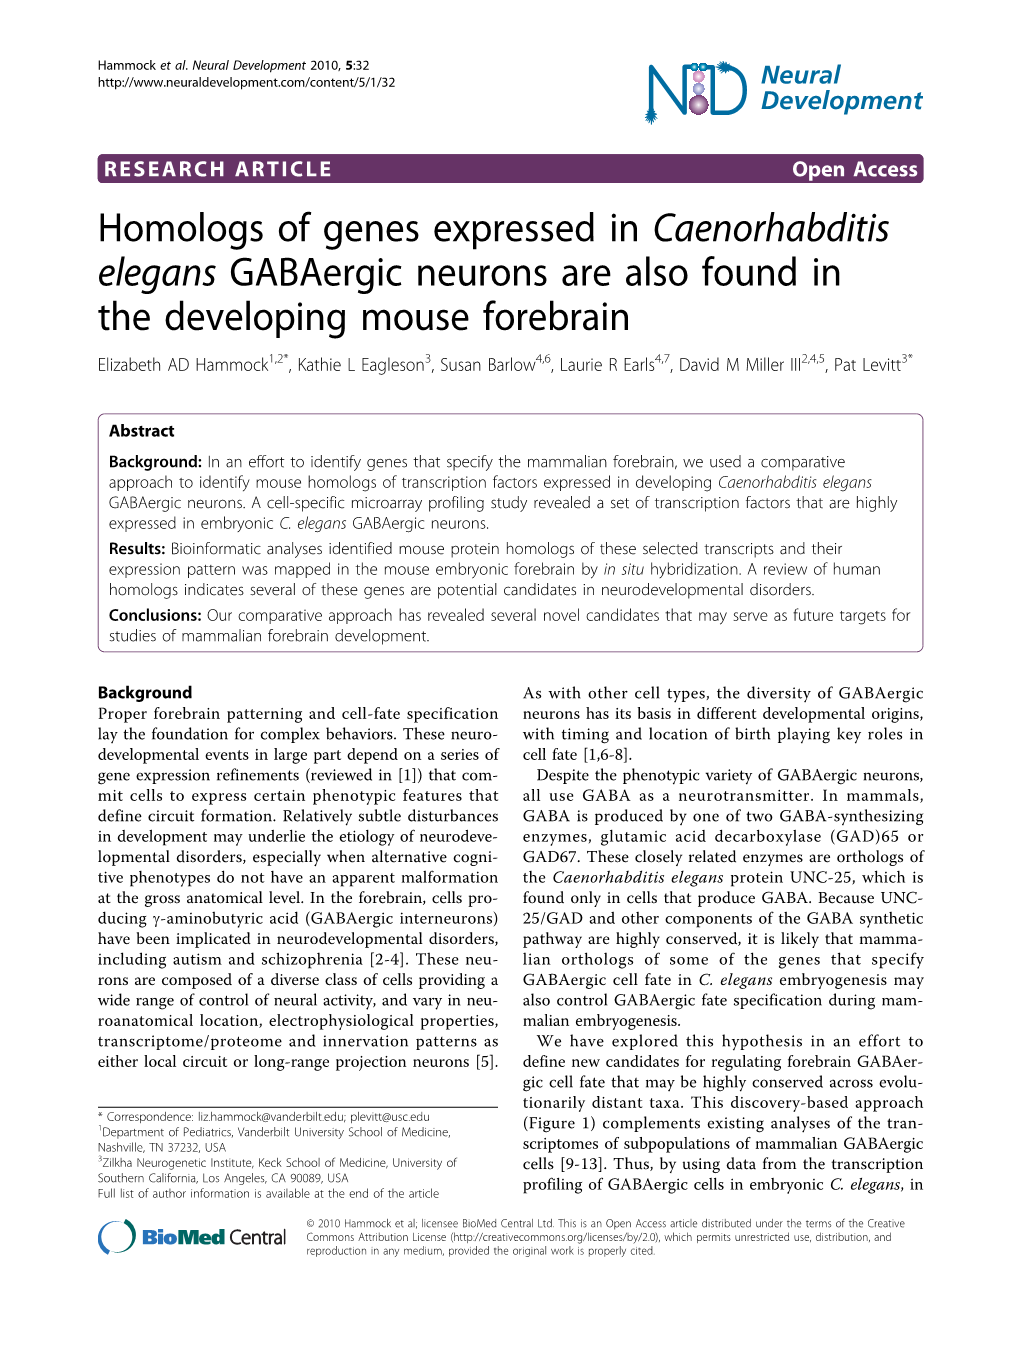 Homologs of Genes Expressed in Caenorhabditis Elegans Gabaergic